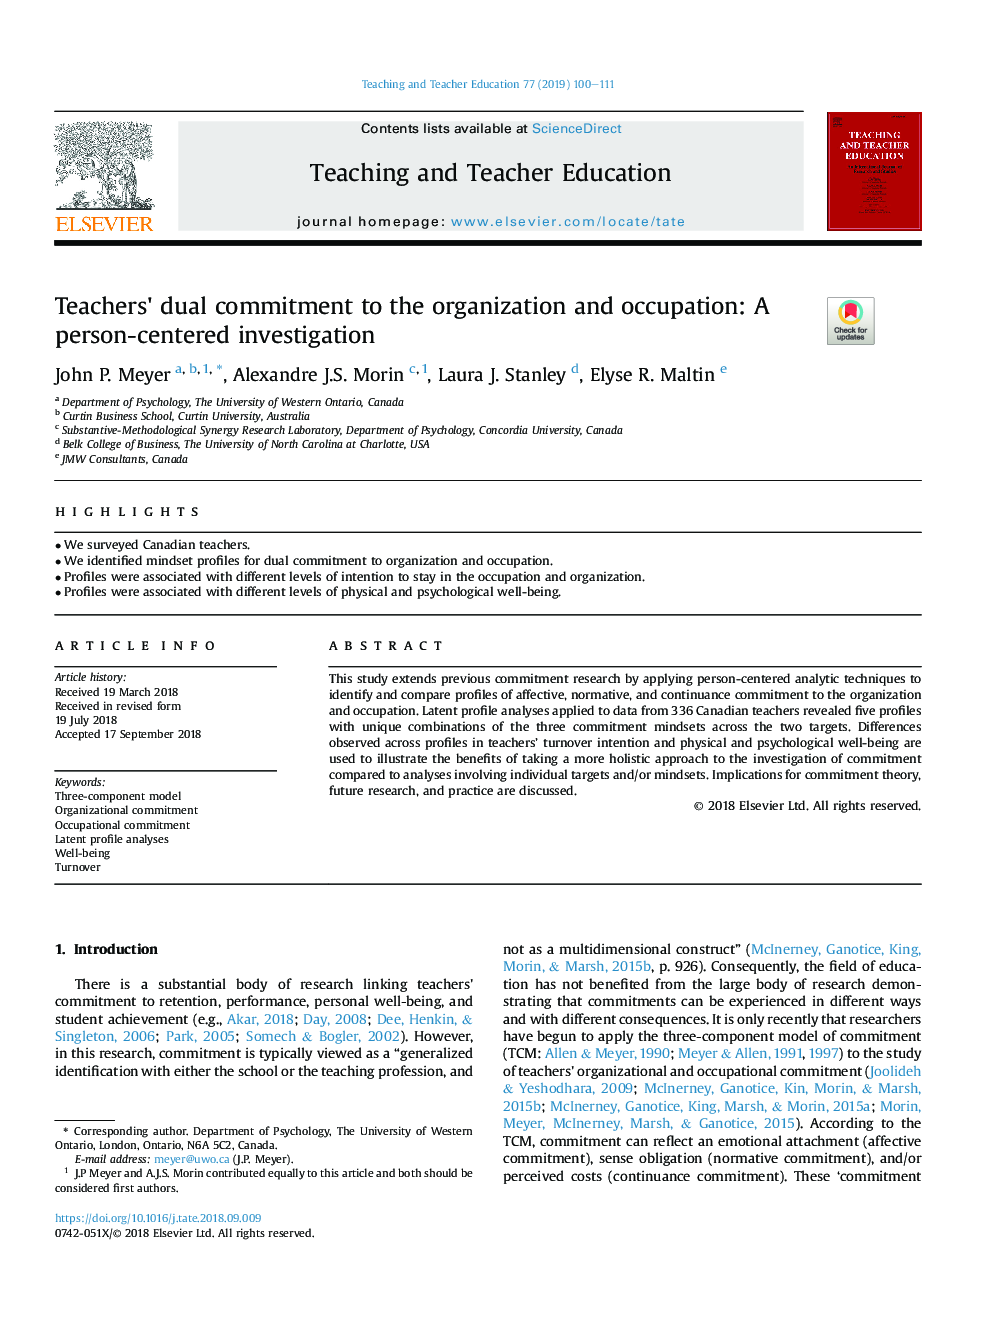 تعهد دوگانه معلمان به سازمان و شغل: یک تحقیق تمرکز شخصی